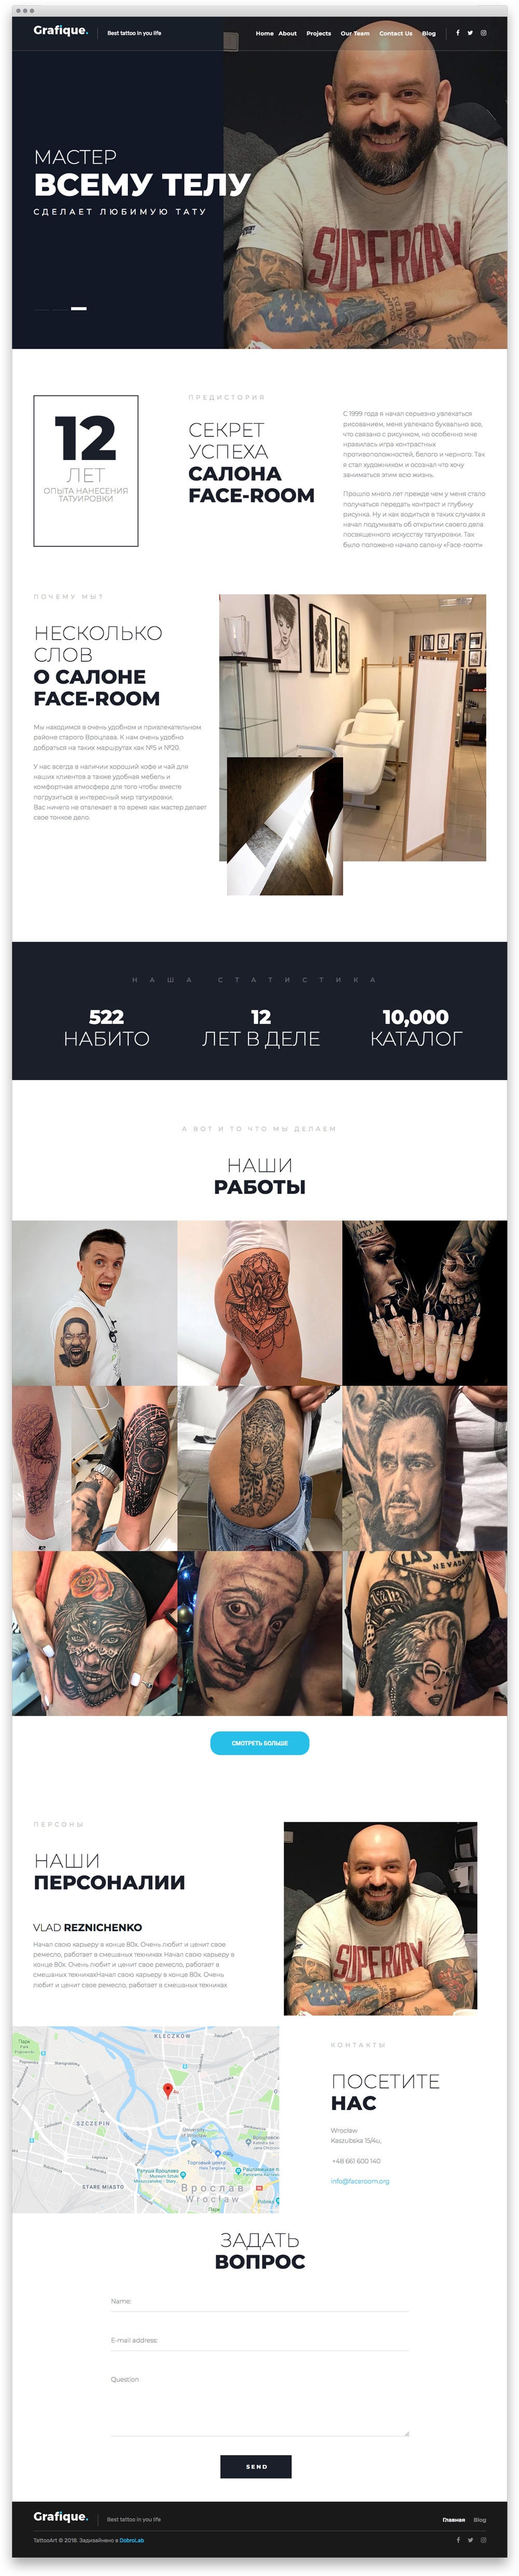 Лендинг тату-салона TattooRoom